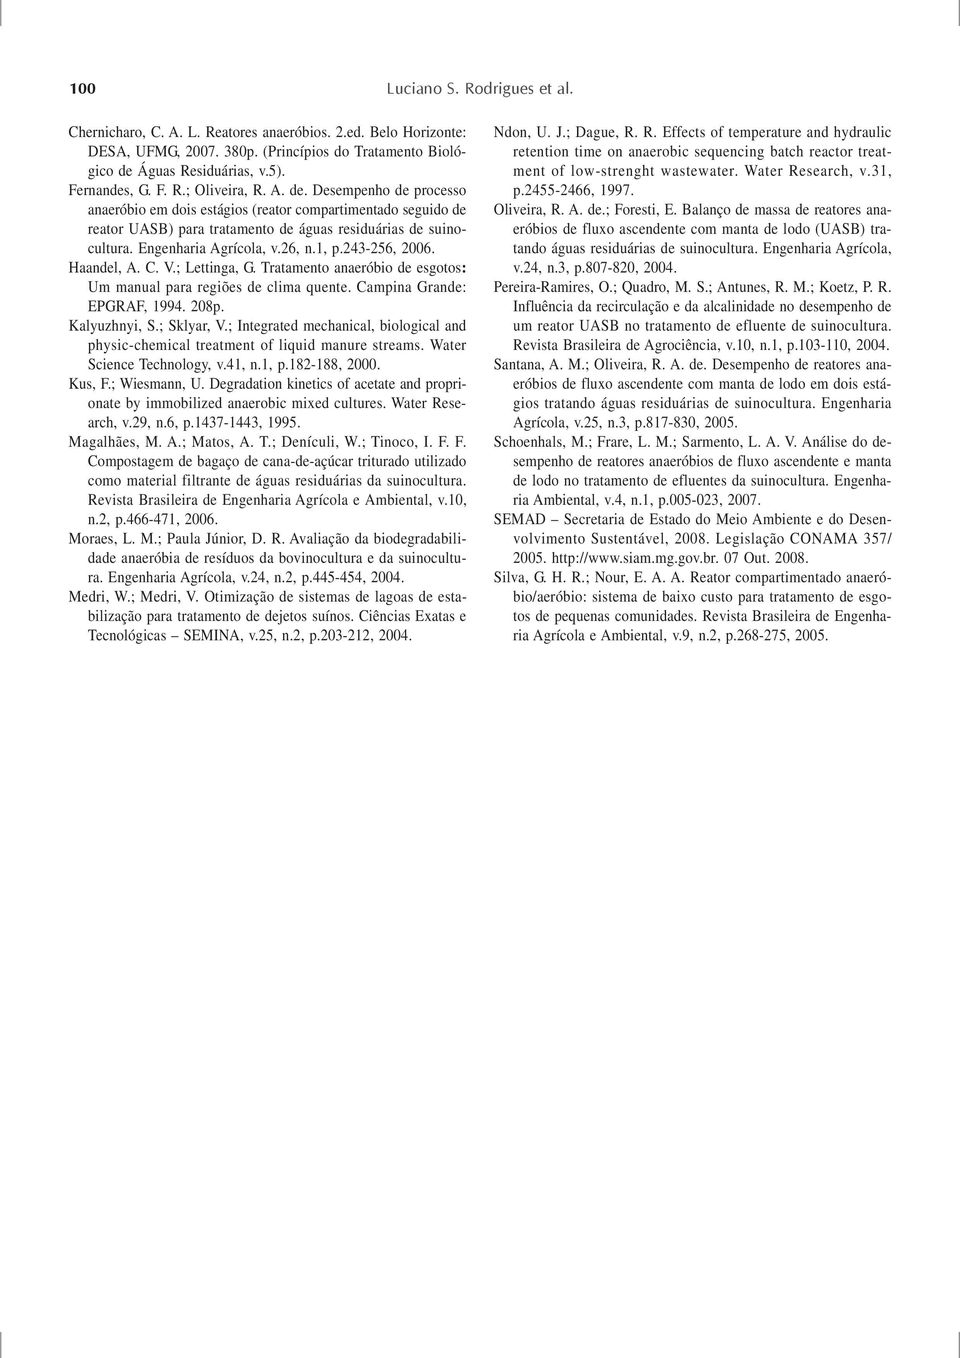 243-256, 6. Haandel, A. C. V.; Lettinga, G. Tratamento anaeróbio de esgotos: Um manual para regiões de clima quente. Campina Grande: EPGRAF, 994. 8p. Kalyuzhnyi, S.; Sklyar, V.